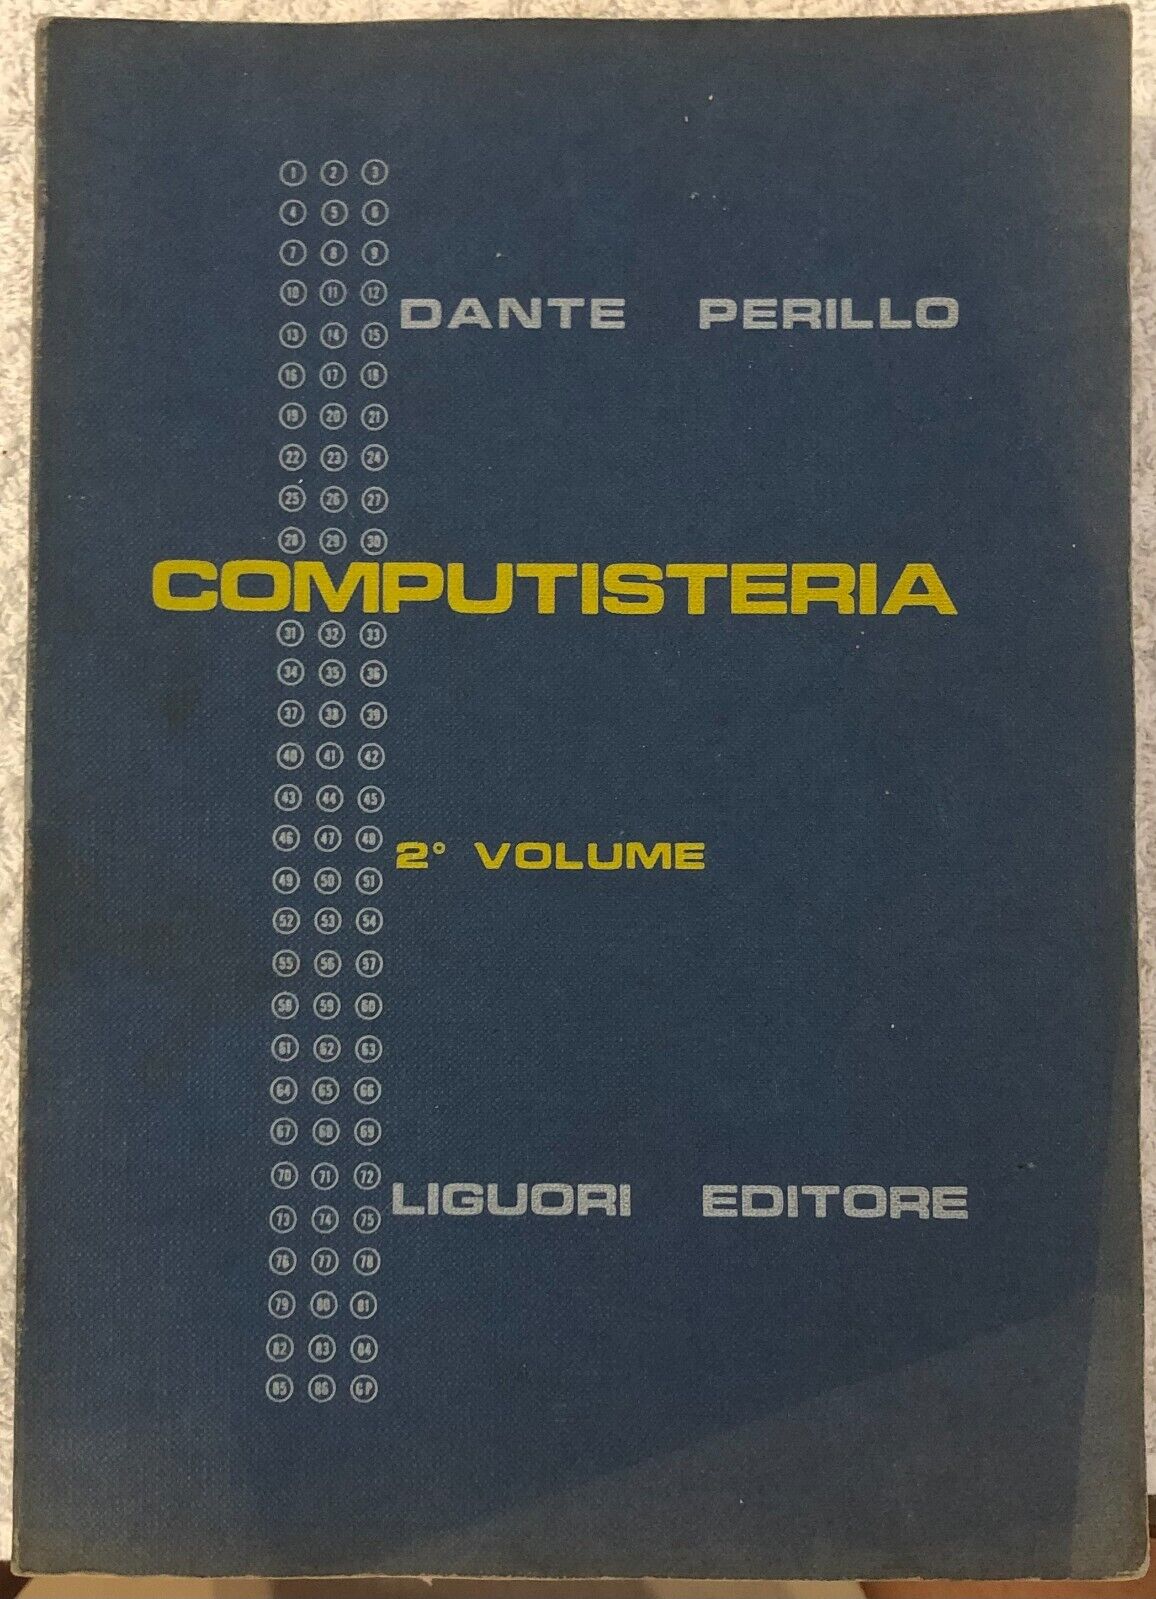 Computisteria 2? volume di Dante Perillo,  1968,  Liguori Editore